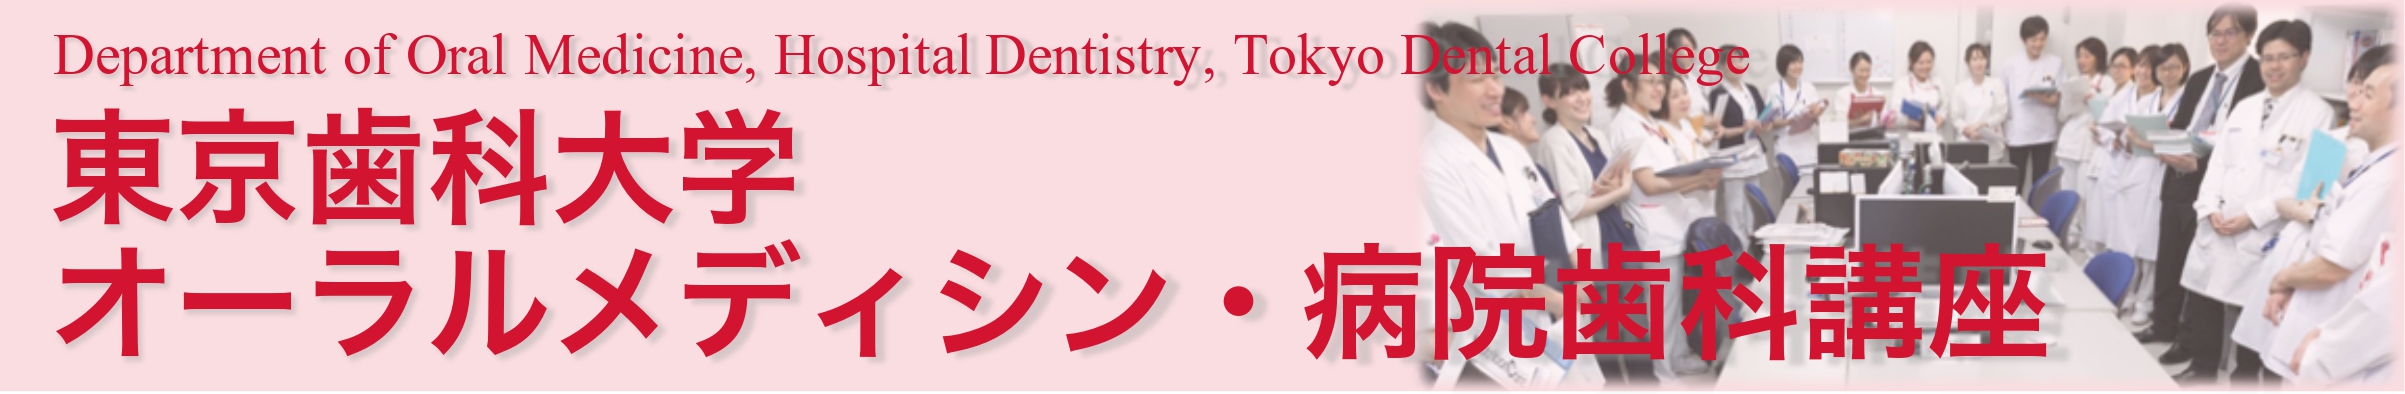 東京歯科大学 オーラルメディシン・病院歯科学講座